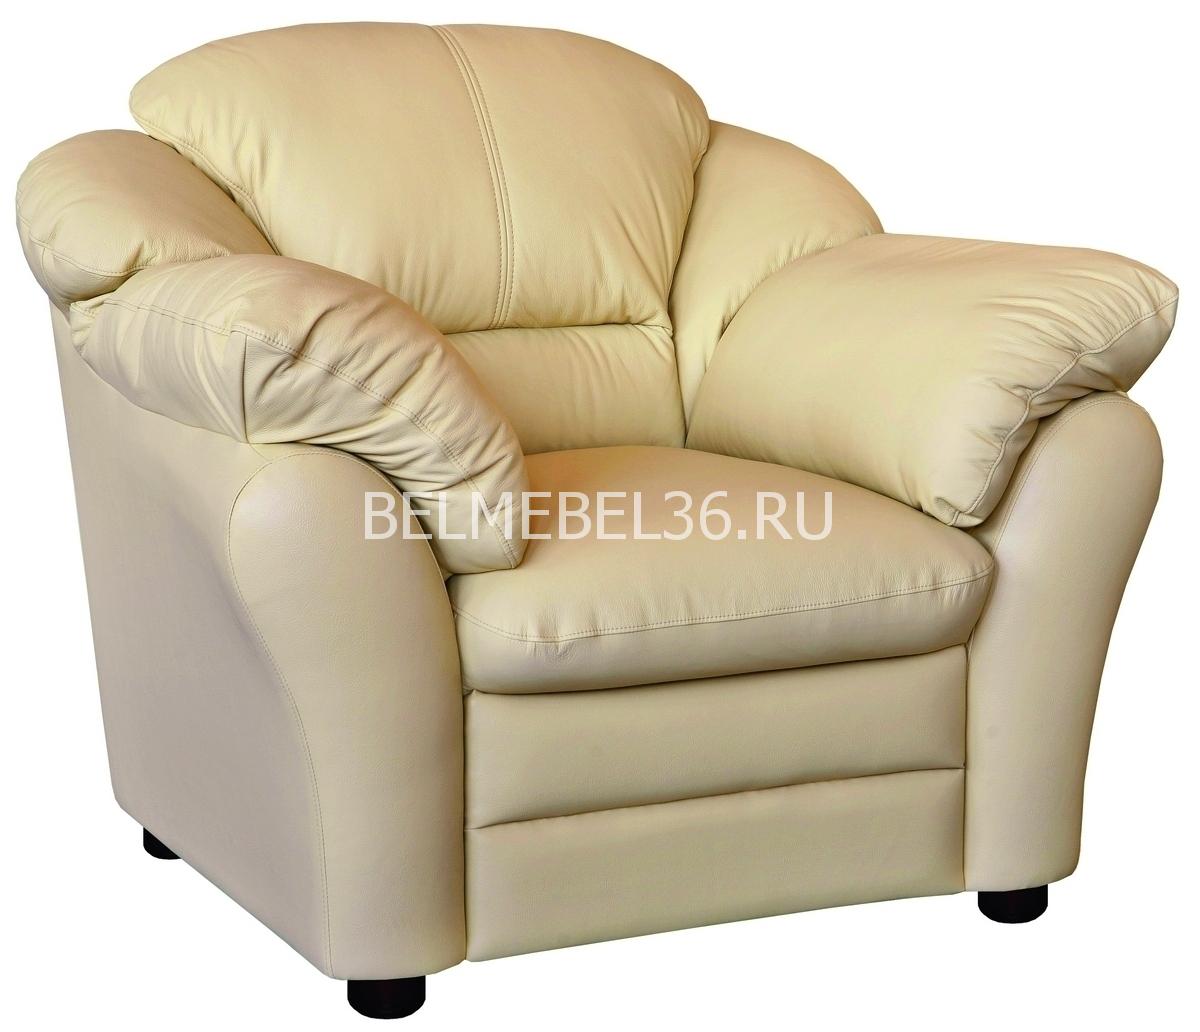 Кресло Сенатор (12) П-Д051 | Белорусская мебель в Воронеже